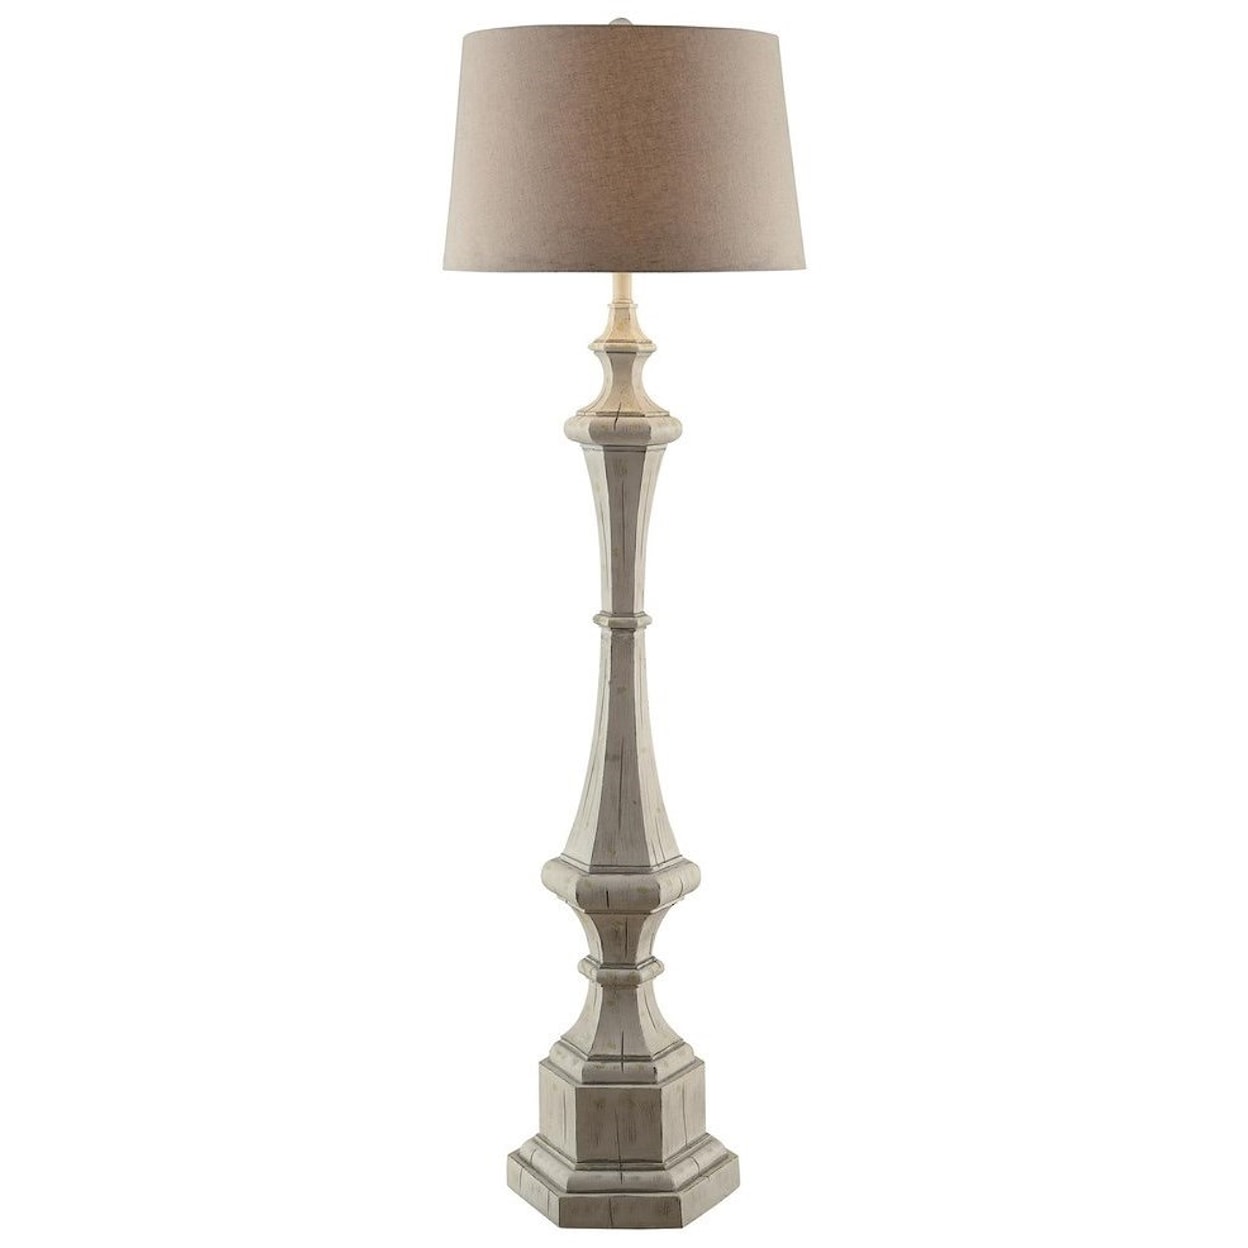 Crestview Collection Lighting Wooden Column Floor Lamp 61.5"Ht